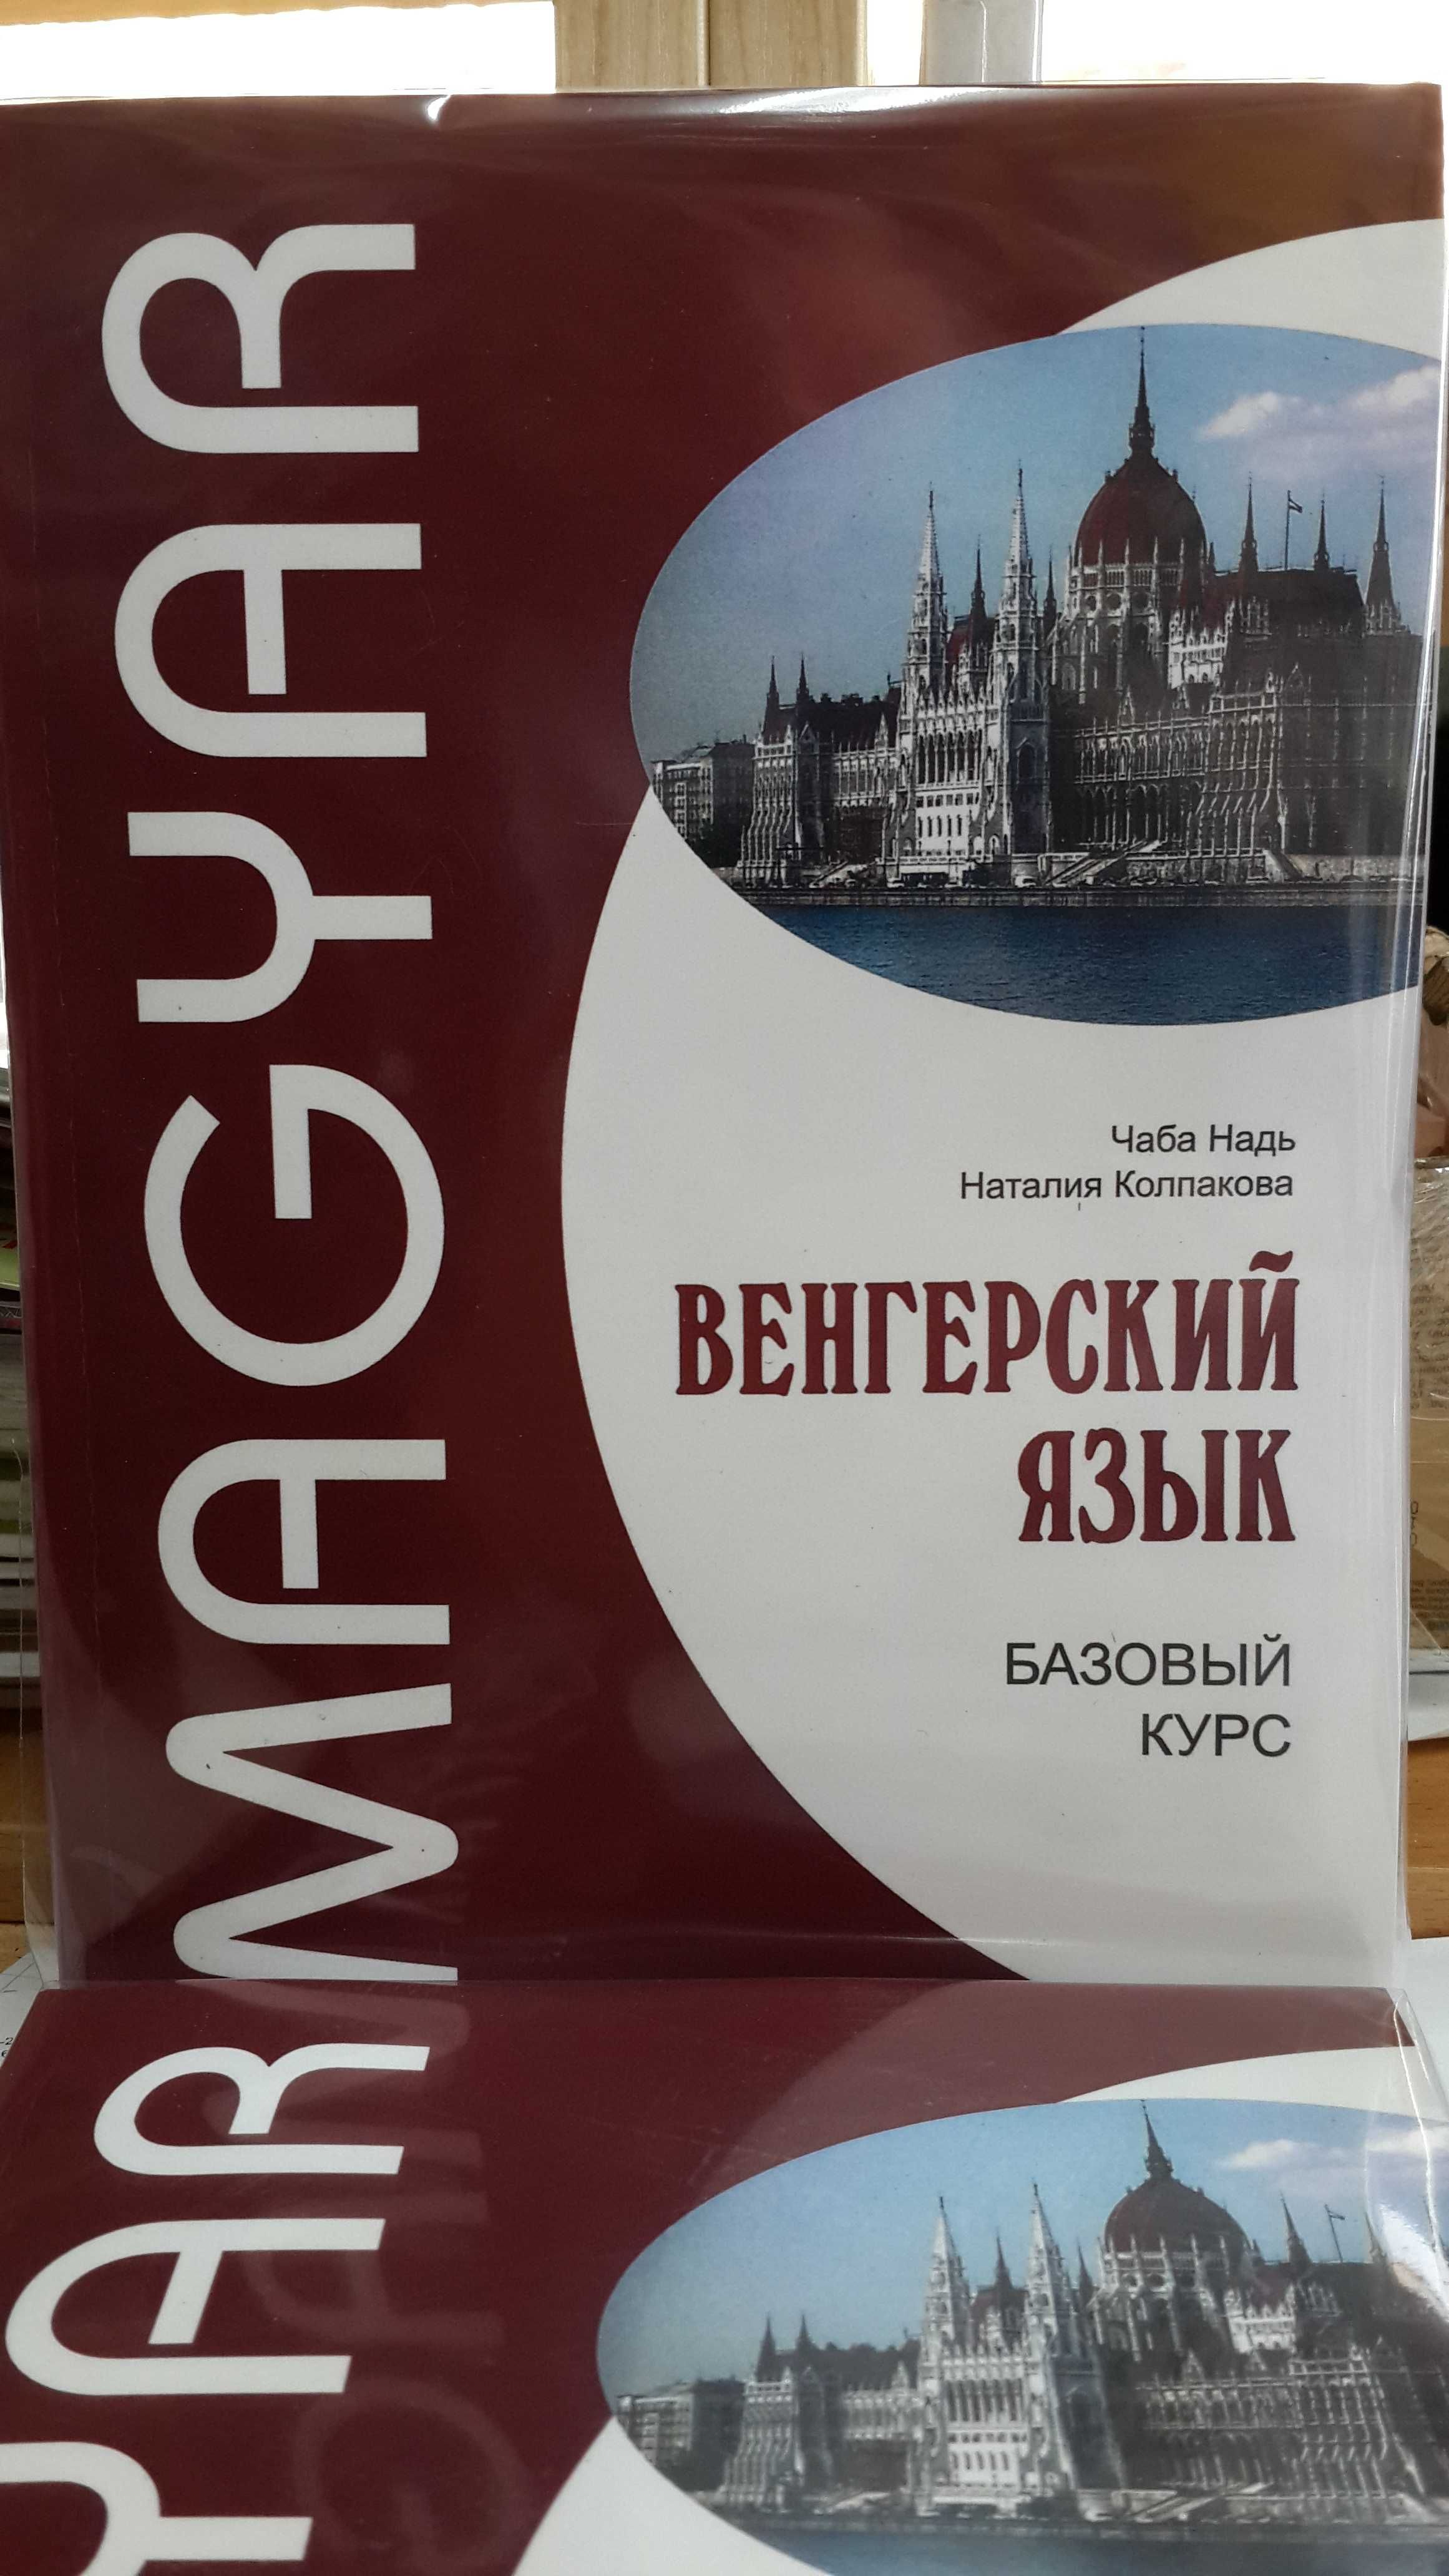 Венгерский язык базовый курс комплексный самоучитель с диском Чаба Над